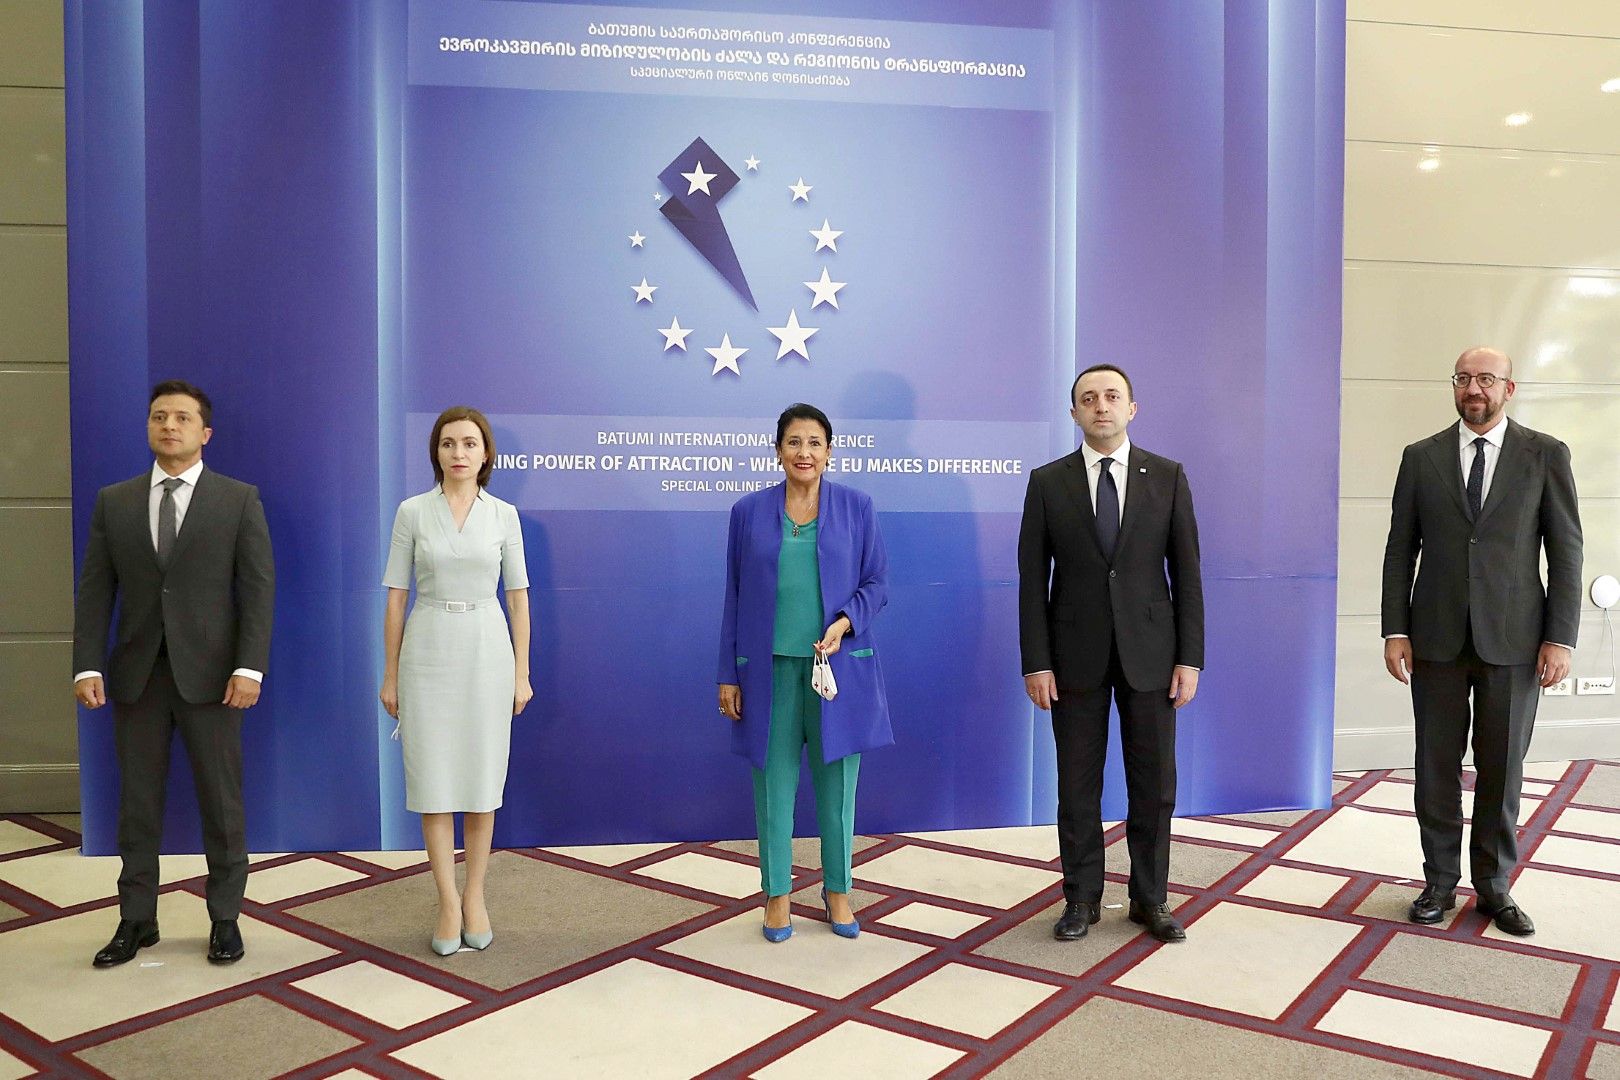 Володимир Зеленски (Украйна), Мая Санду (Молдова), Саломе Зурабишвили (президент на Грузия), Иракли Гарибашвили (премиер на Грузия) и Шарл Мишел (ЕС) на срещата в Батуми